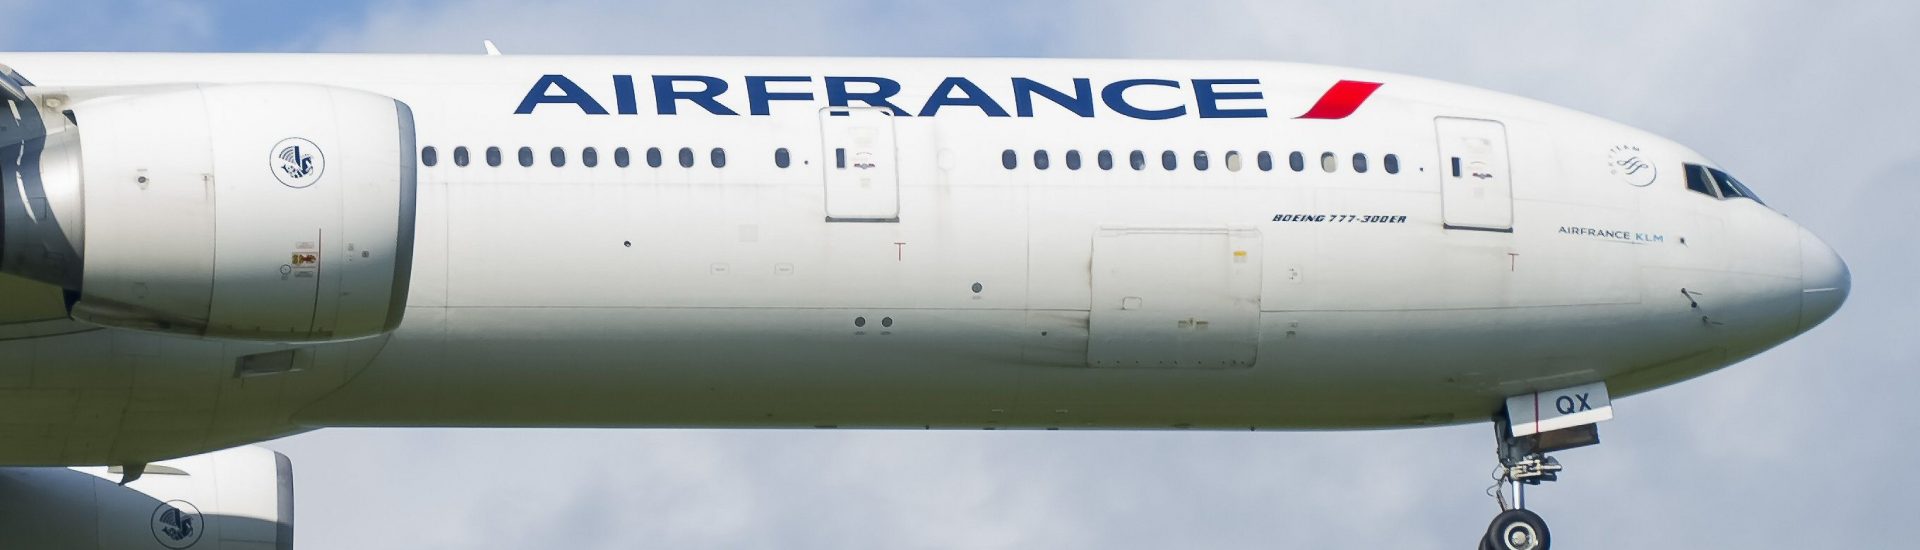 B777-300ER Air France F-GSQX